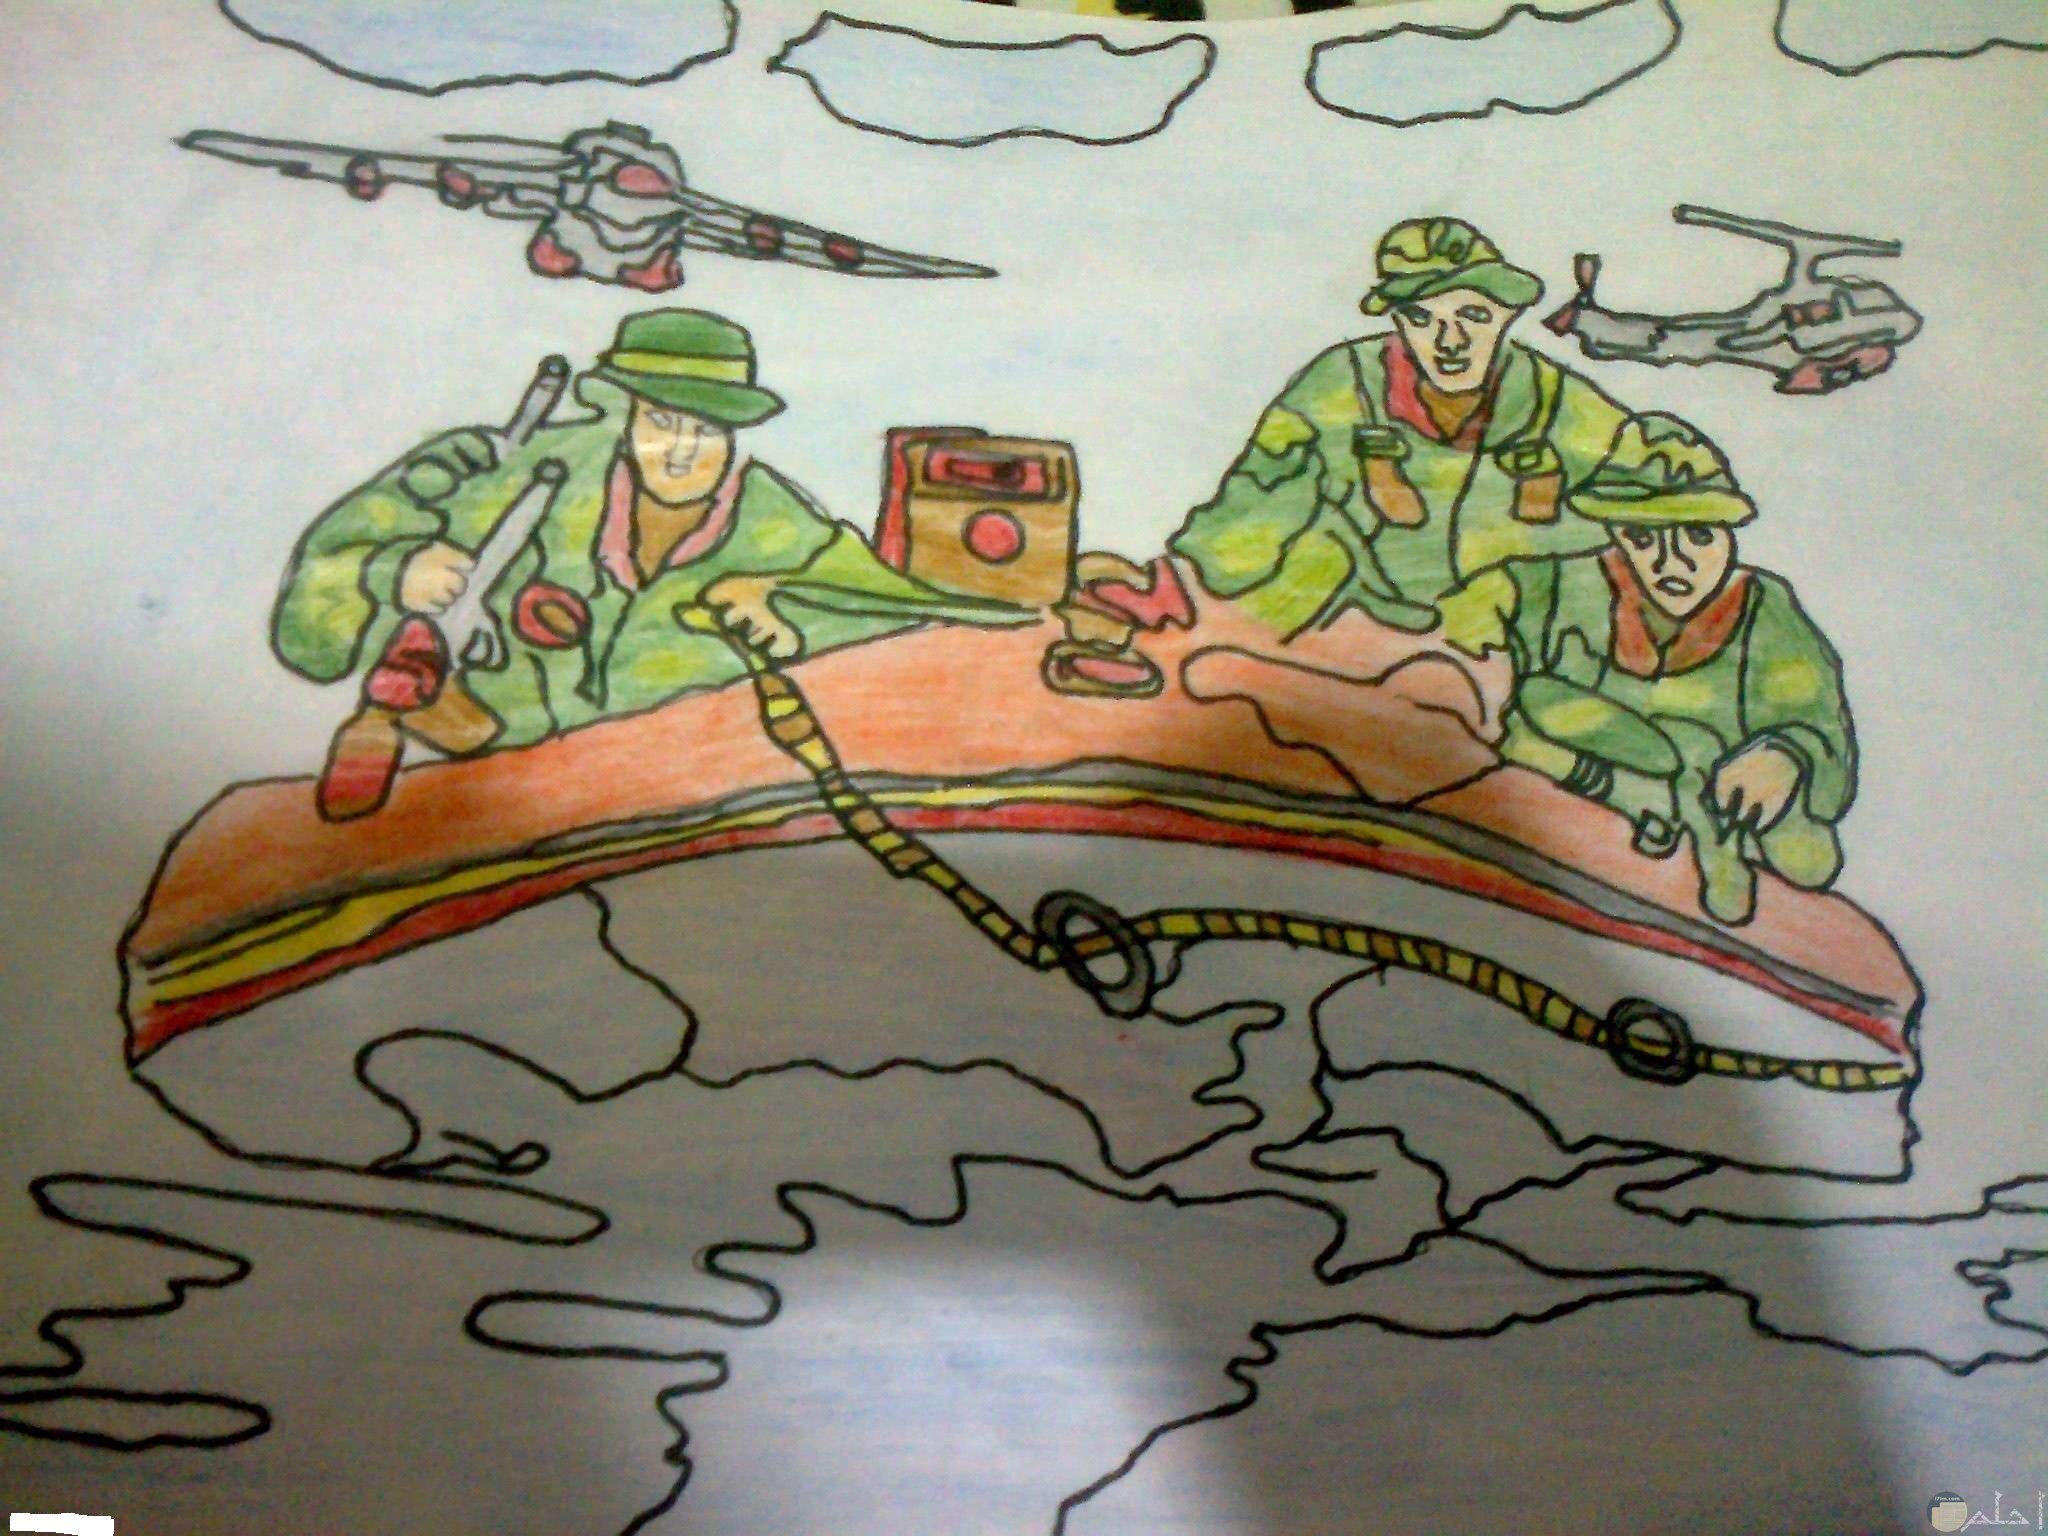 رسمة ملونة لجنود يركبون قارب و يعبرون به القناة و الطائرات تحلق فوقهم.